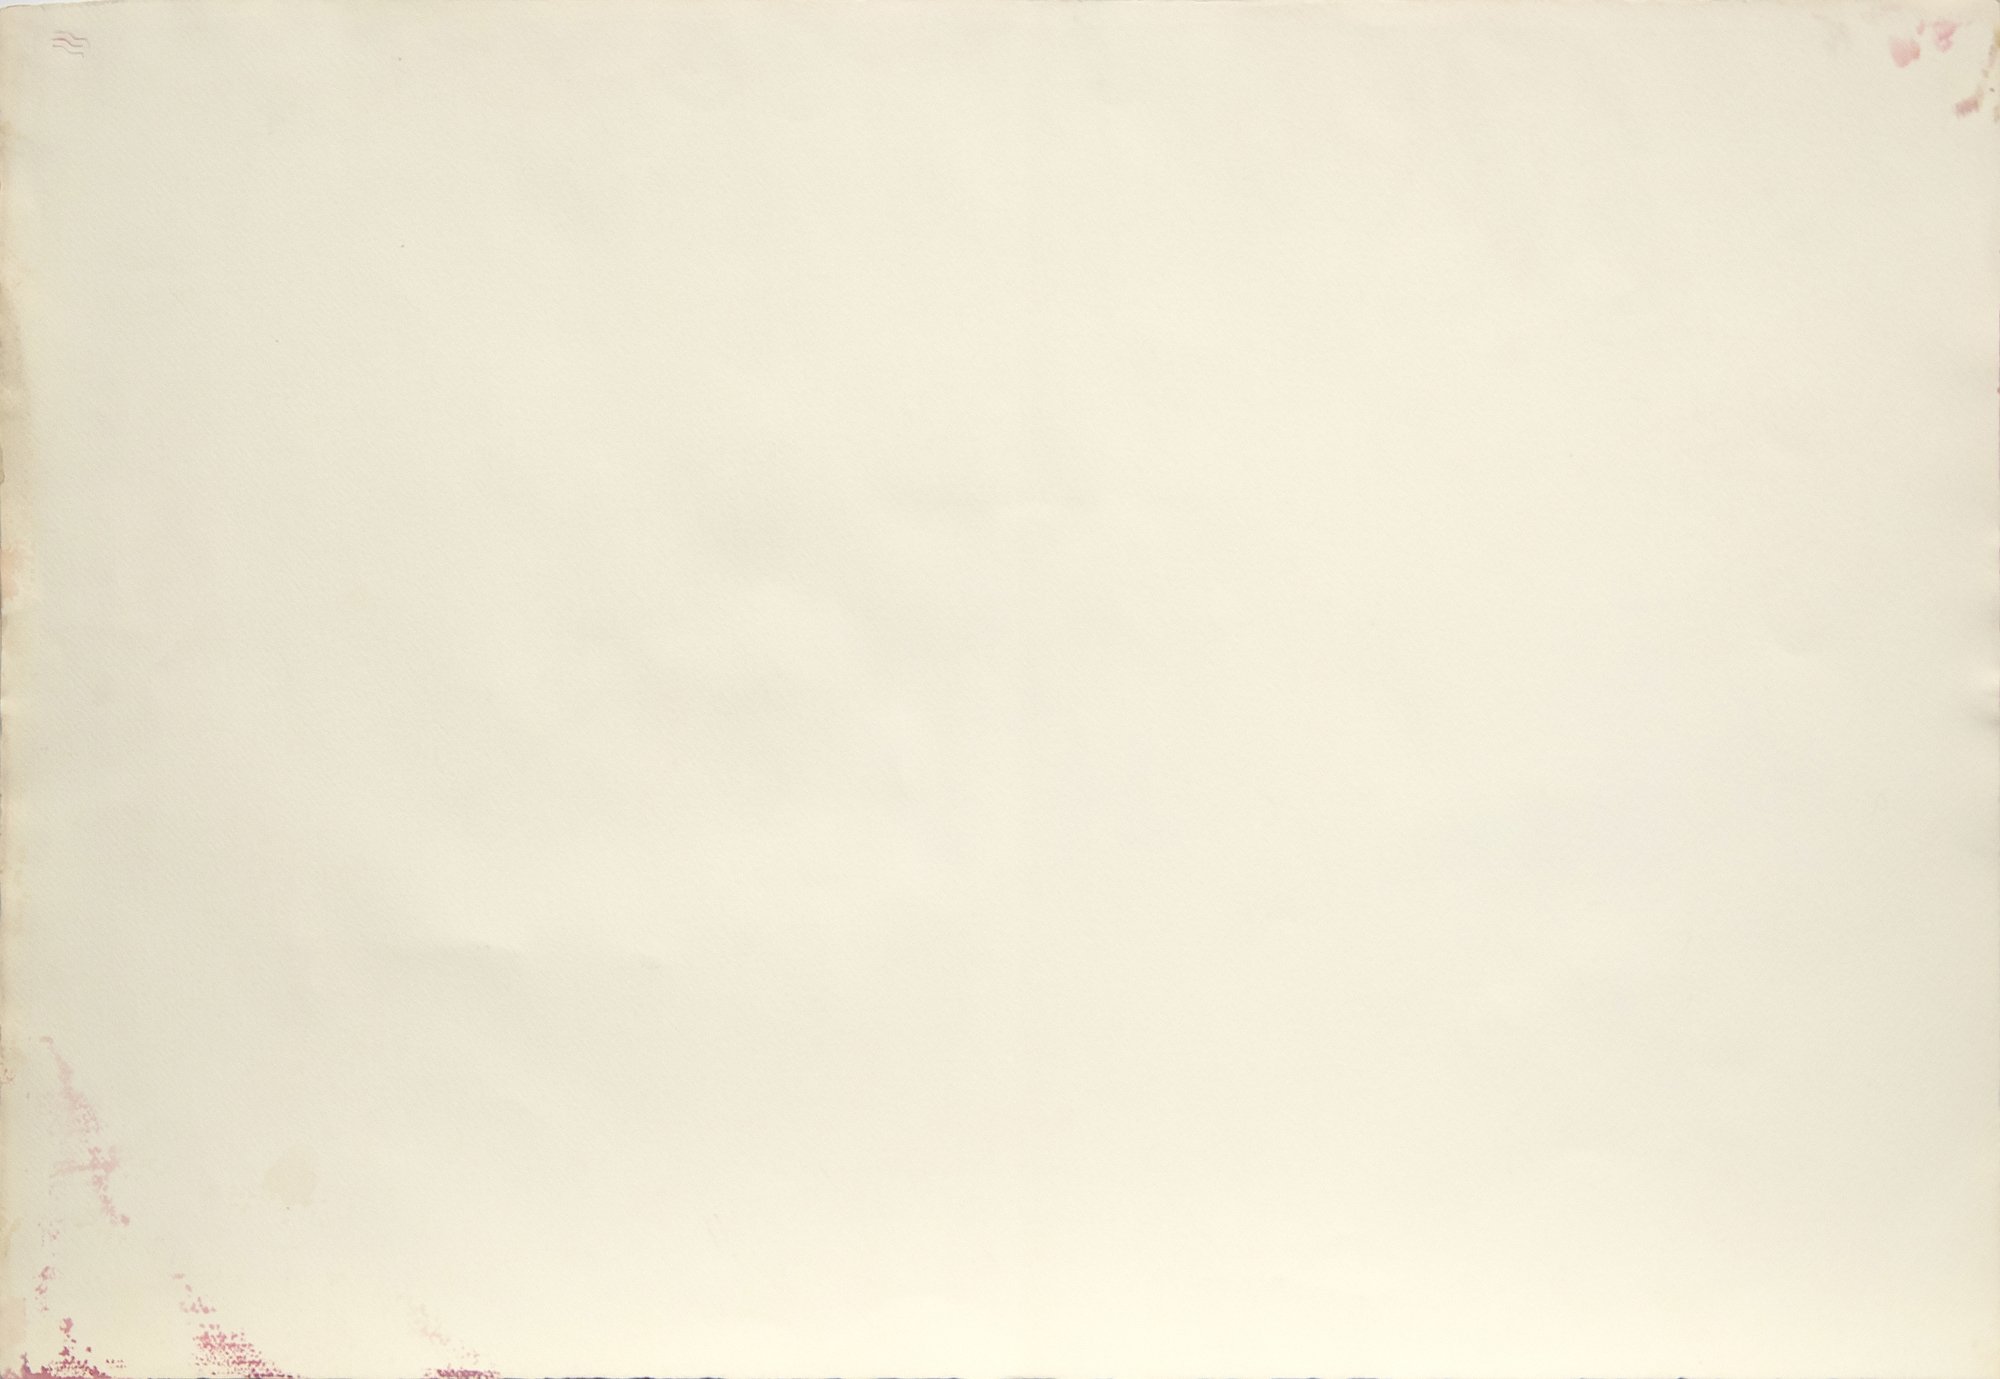 بول جنكنز-بدون عنوان-ألوان المائية والحبر علي الورق-29 3/4 x 42 3/4 في.